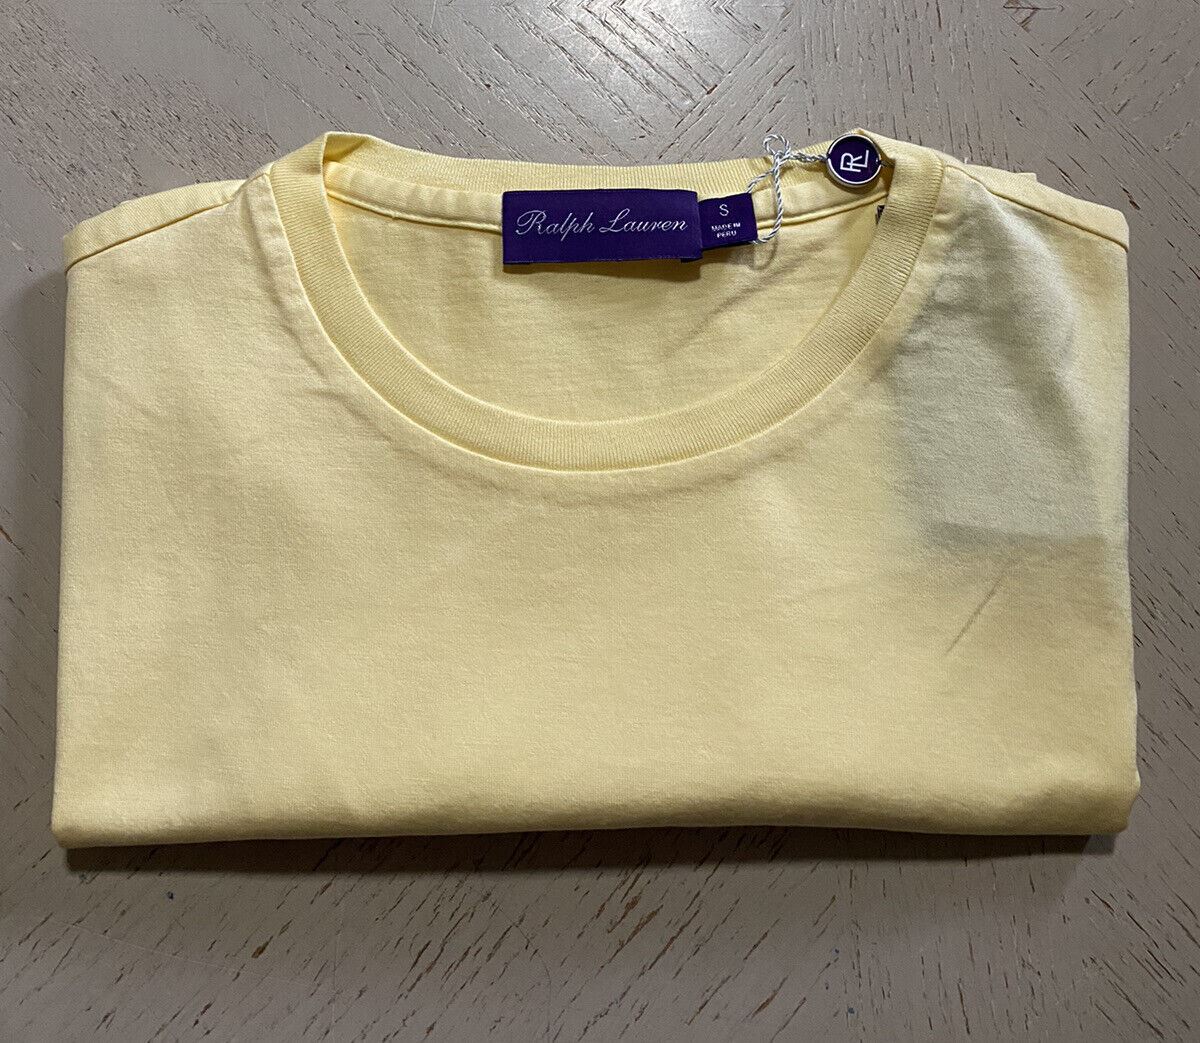 Neu mit Etikett: Ralph Lauren Purple Label Herren-Baumwoll-T-Shirt, Gelb, S, Italien